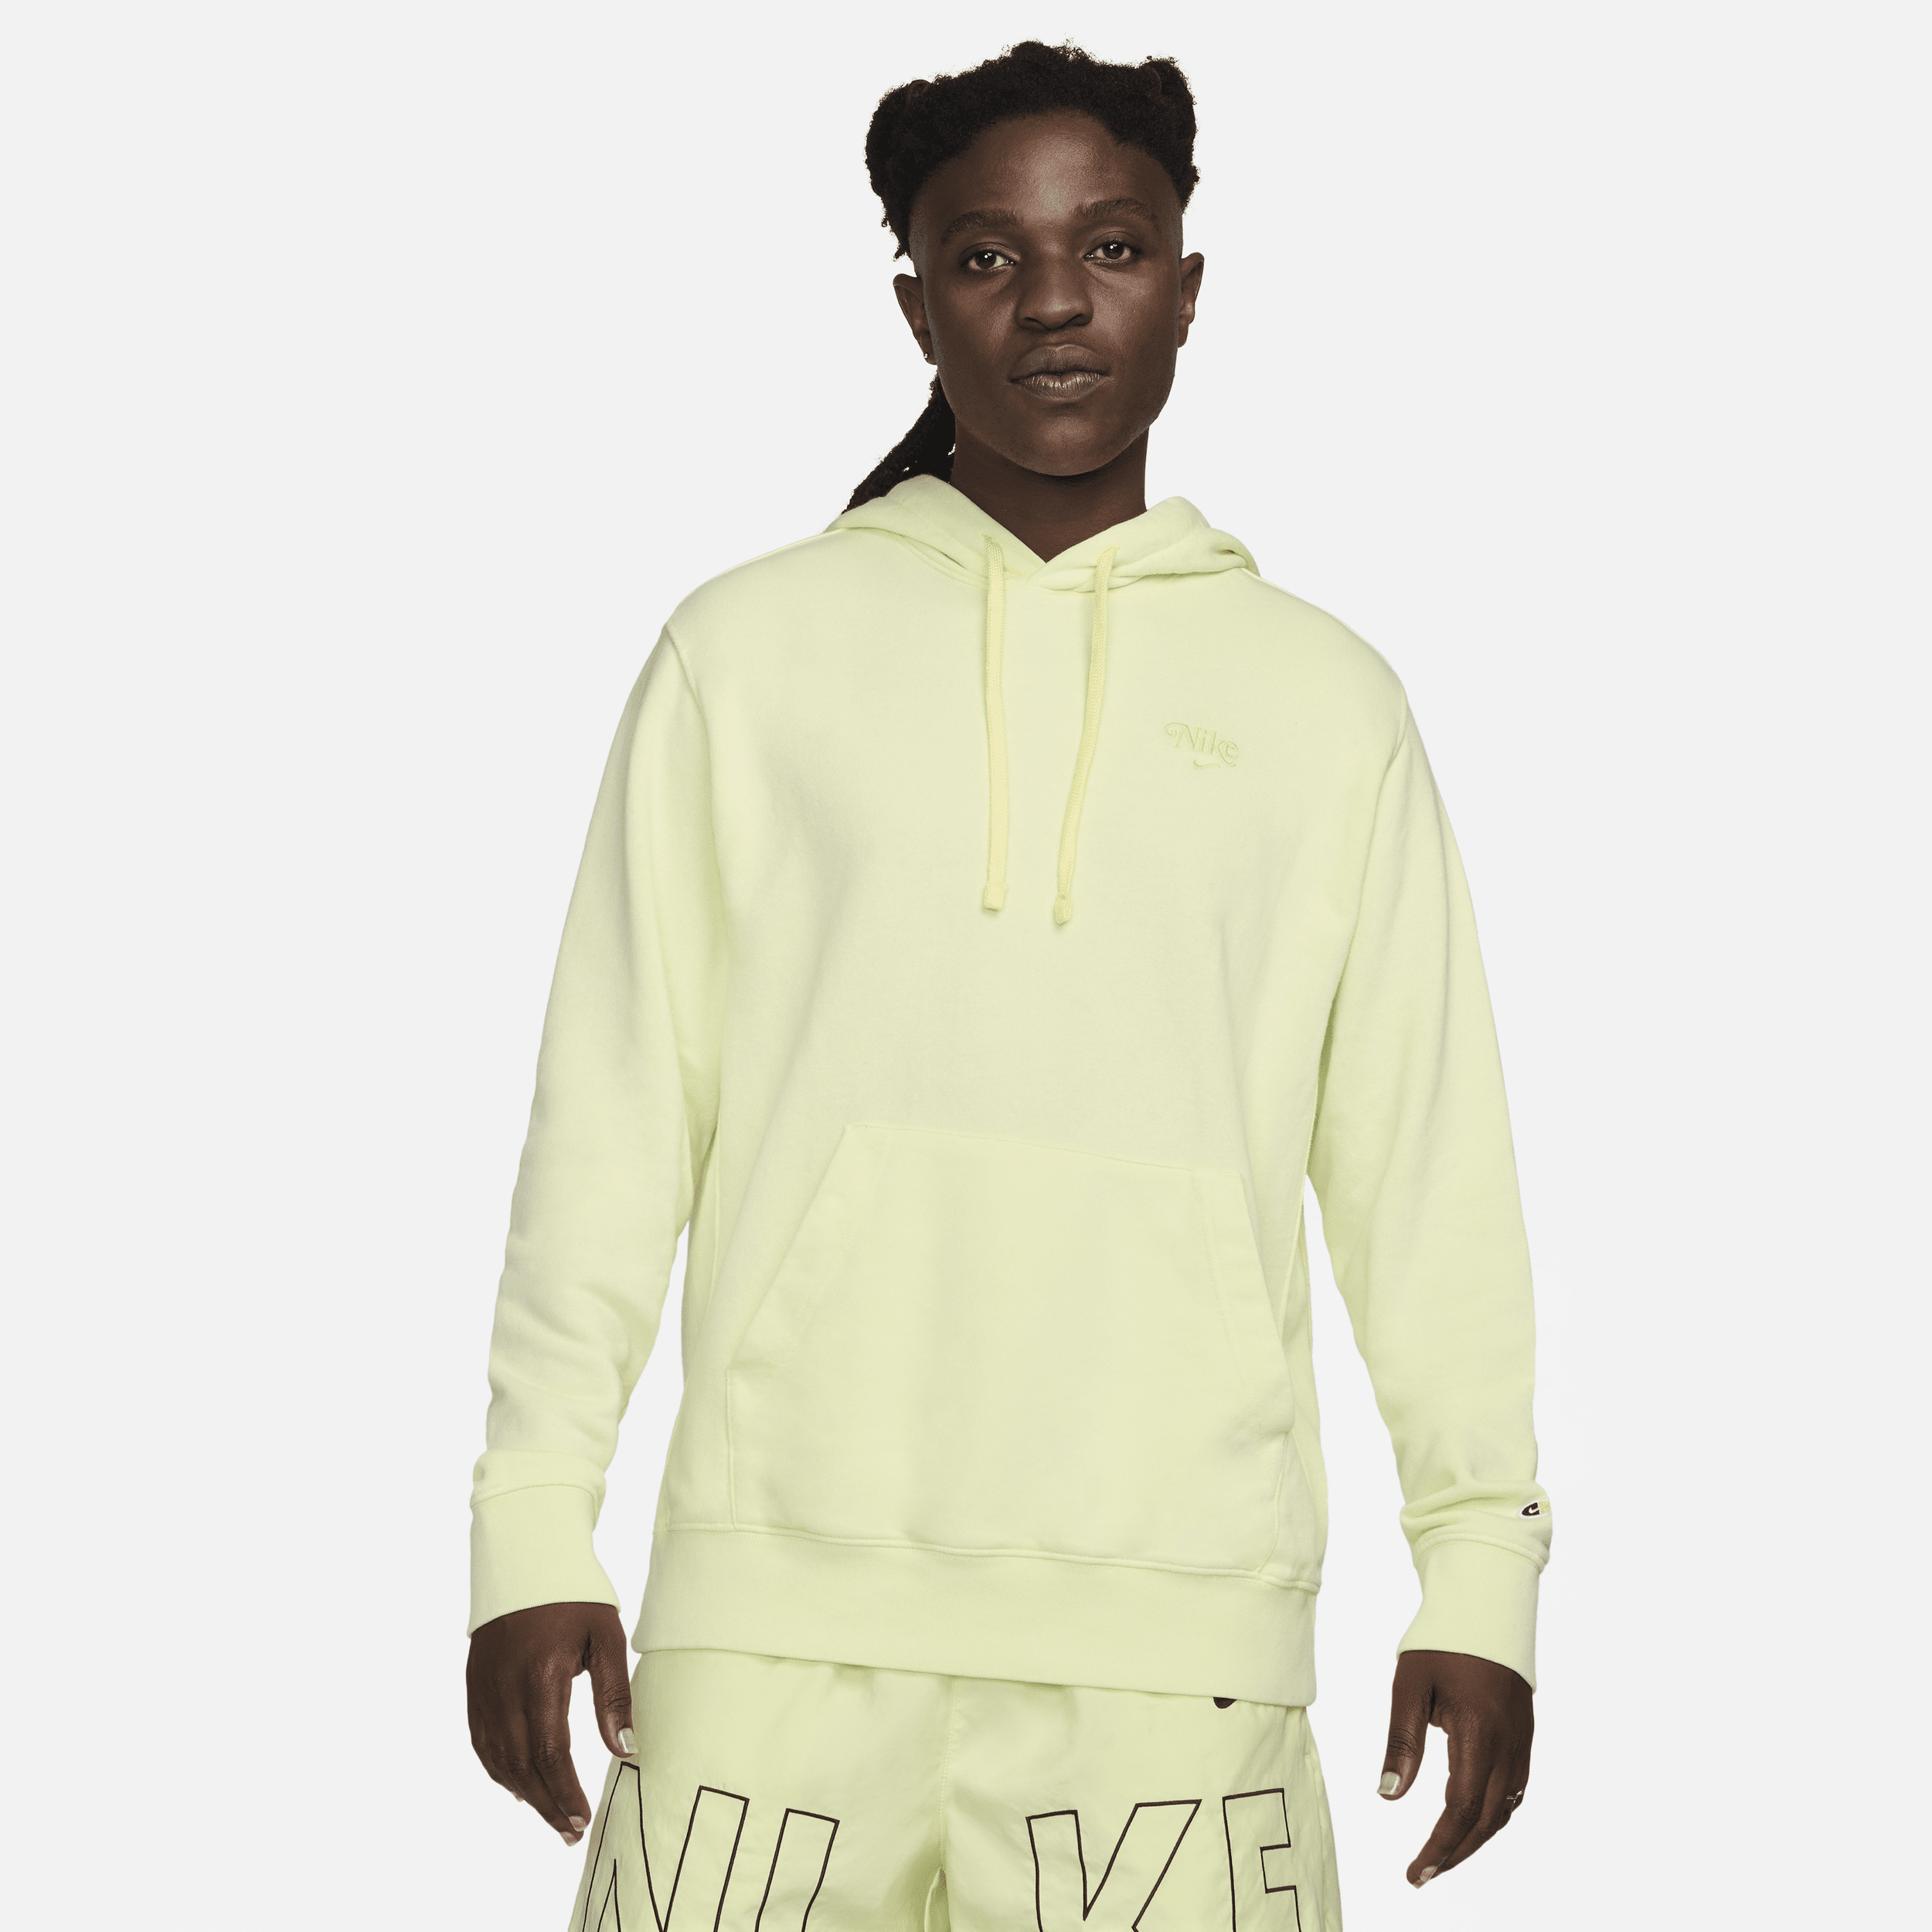 Felpa pullover con cappuccio Nike Sportswear Club Fleece - Uomo - Verde